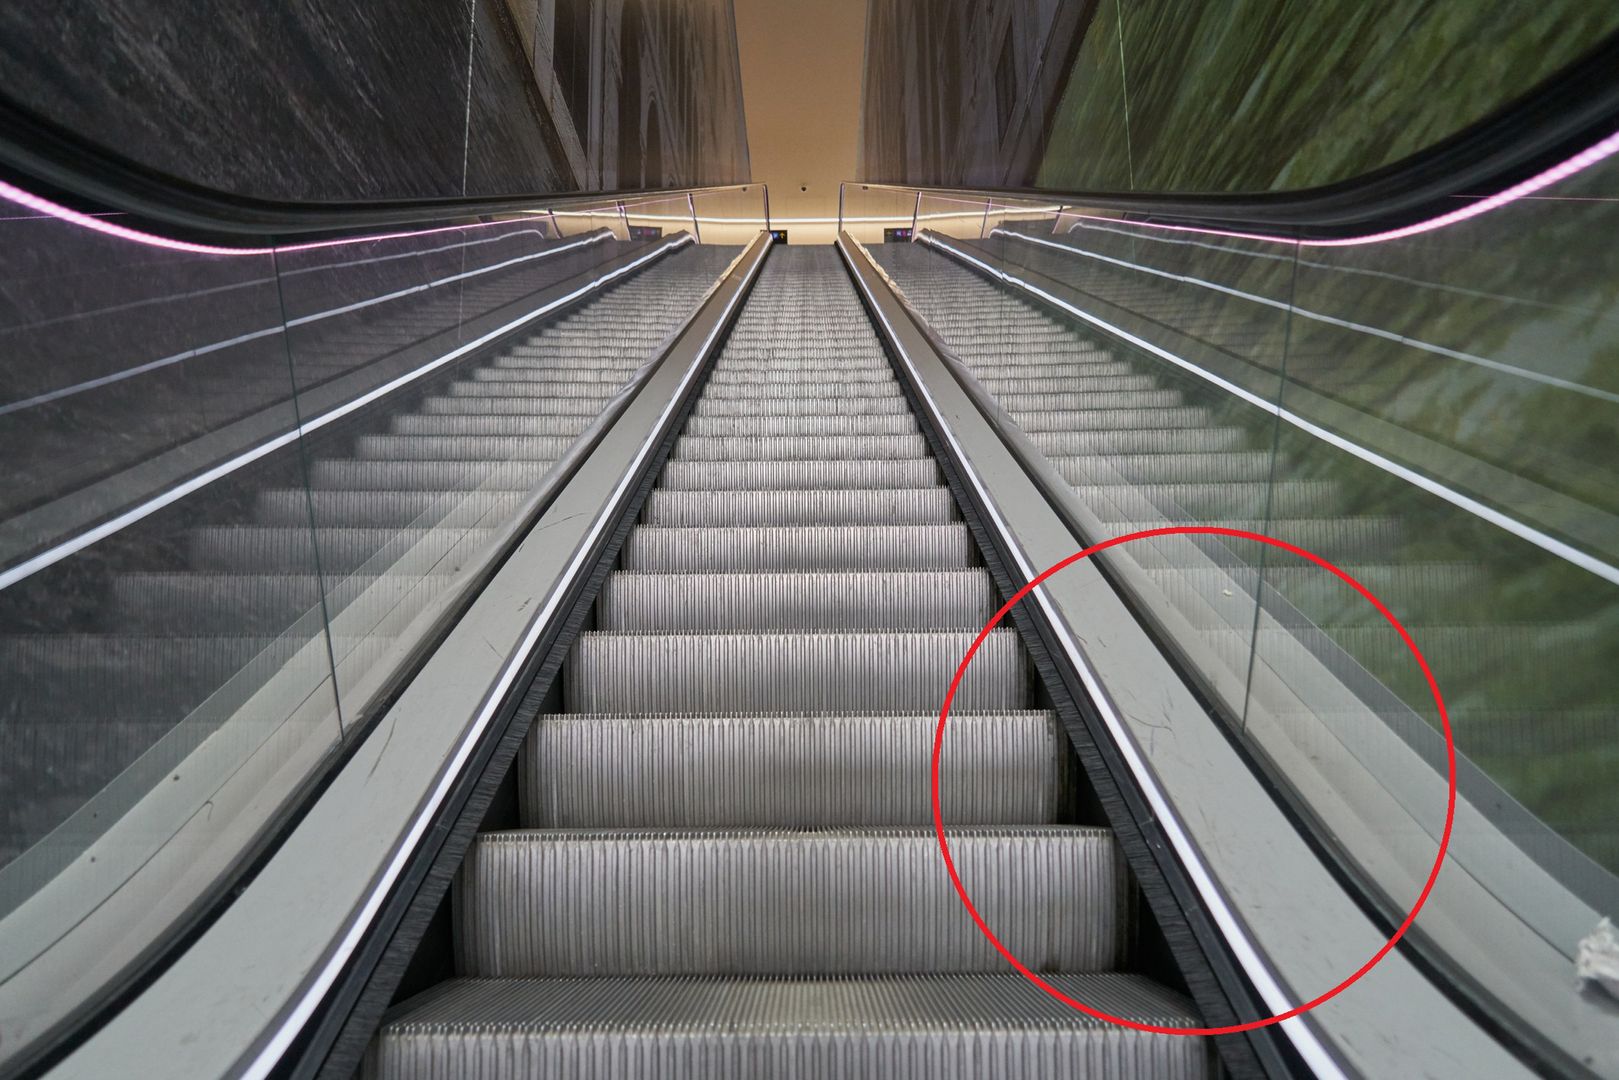 Do czego służą szczotki w ruchomych schodach? Nie chodzi o czyszczenie butów